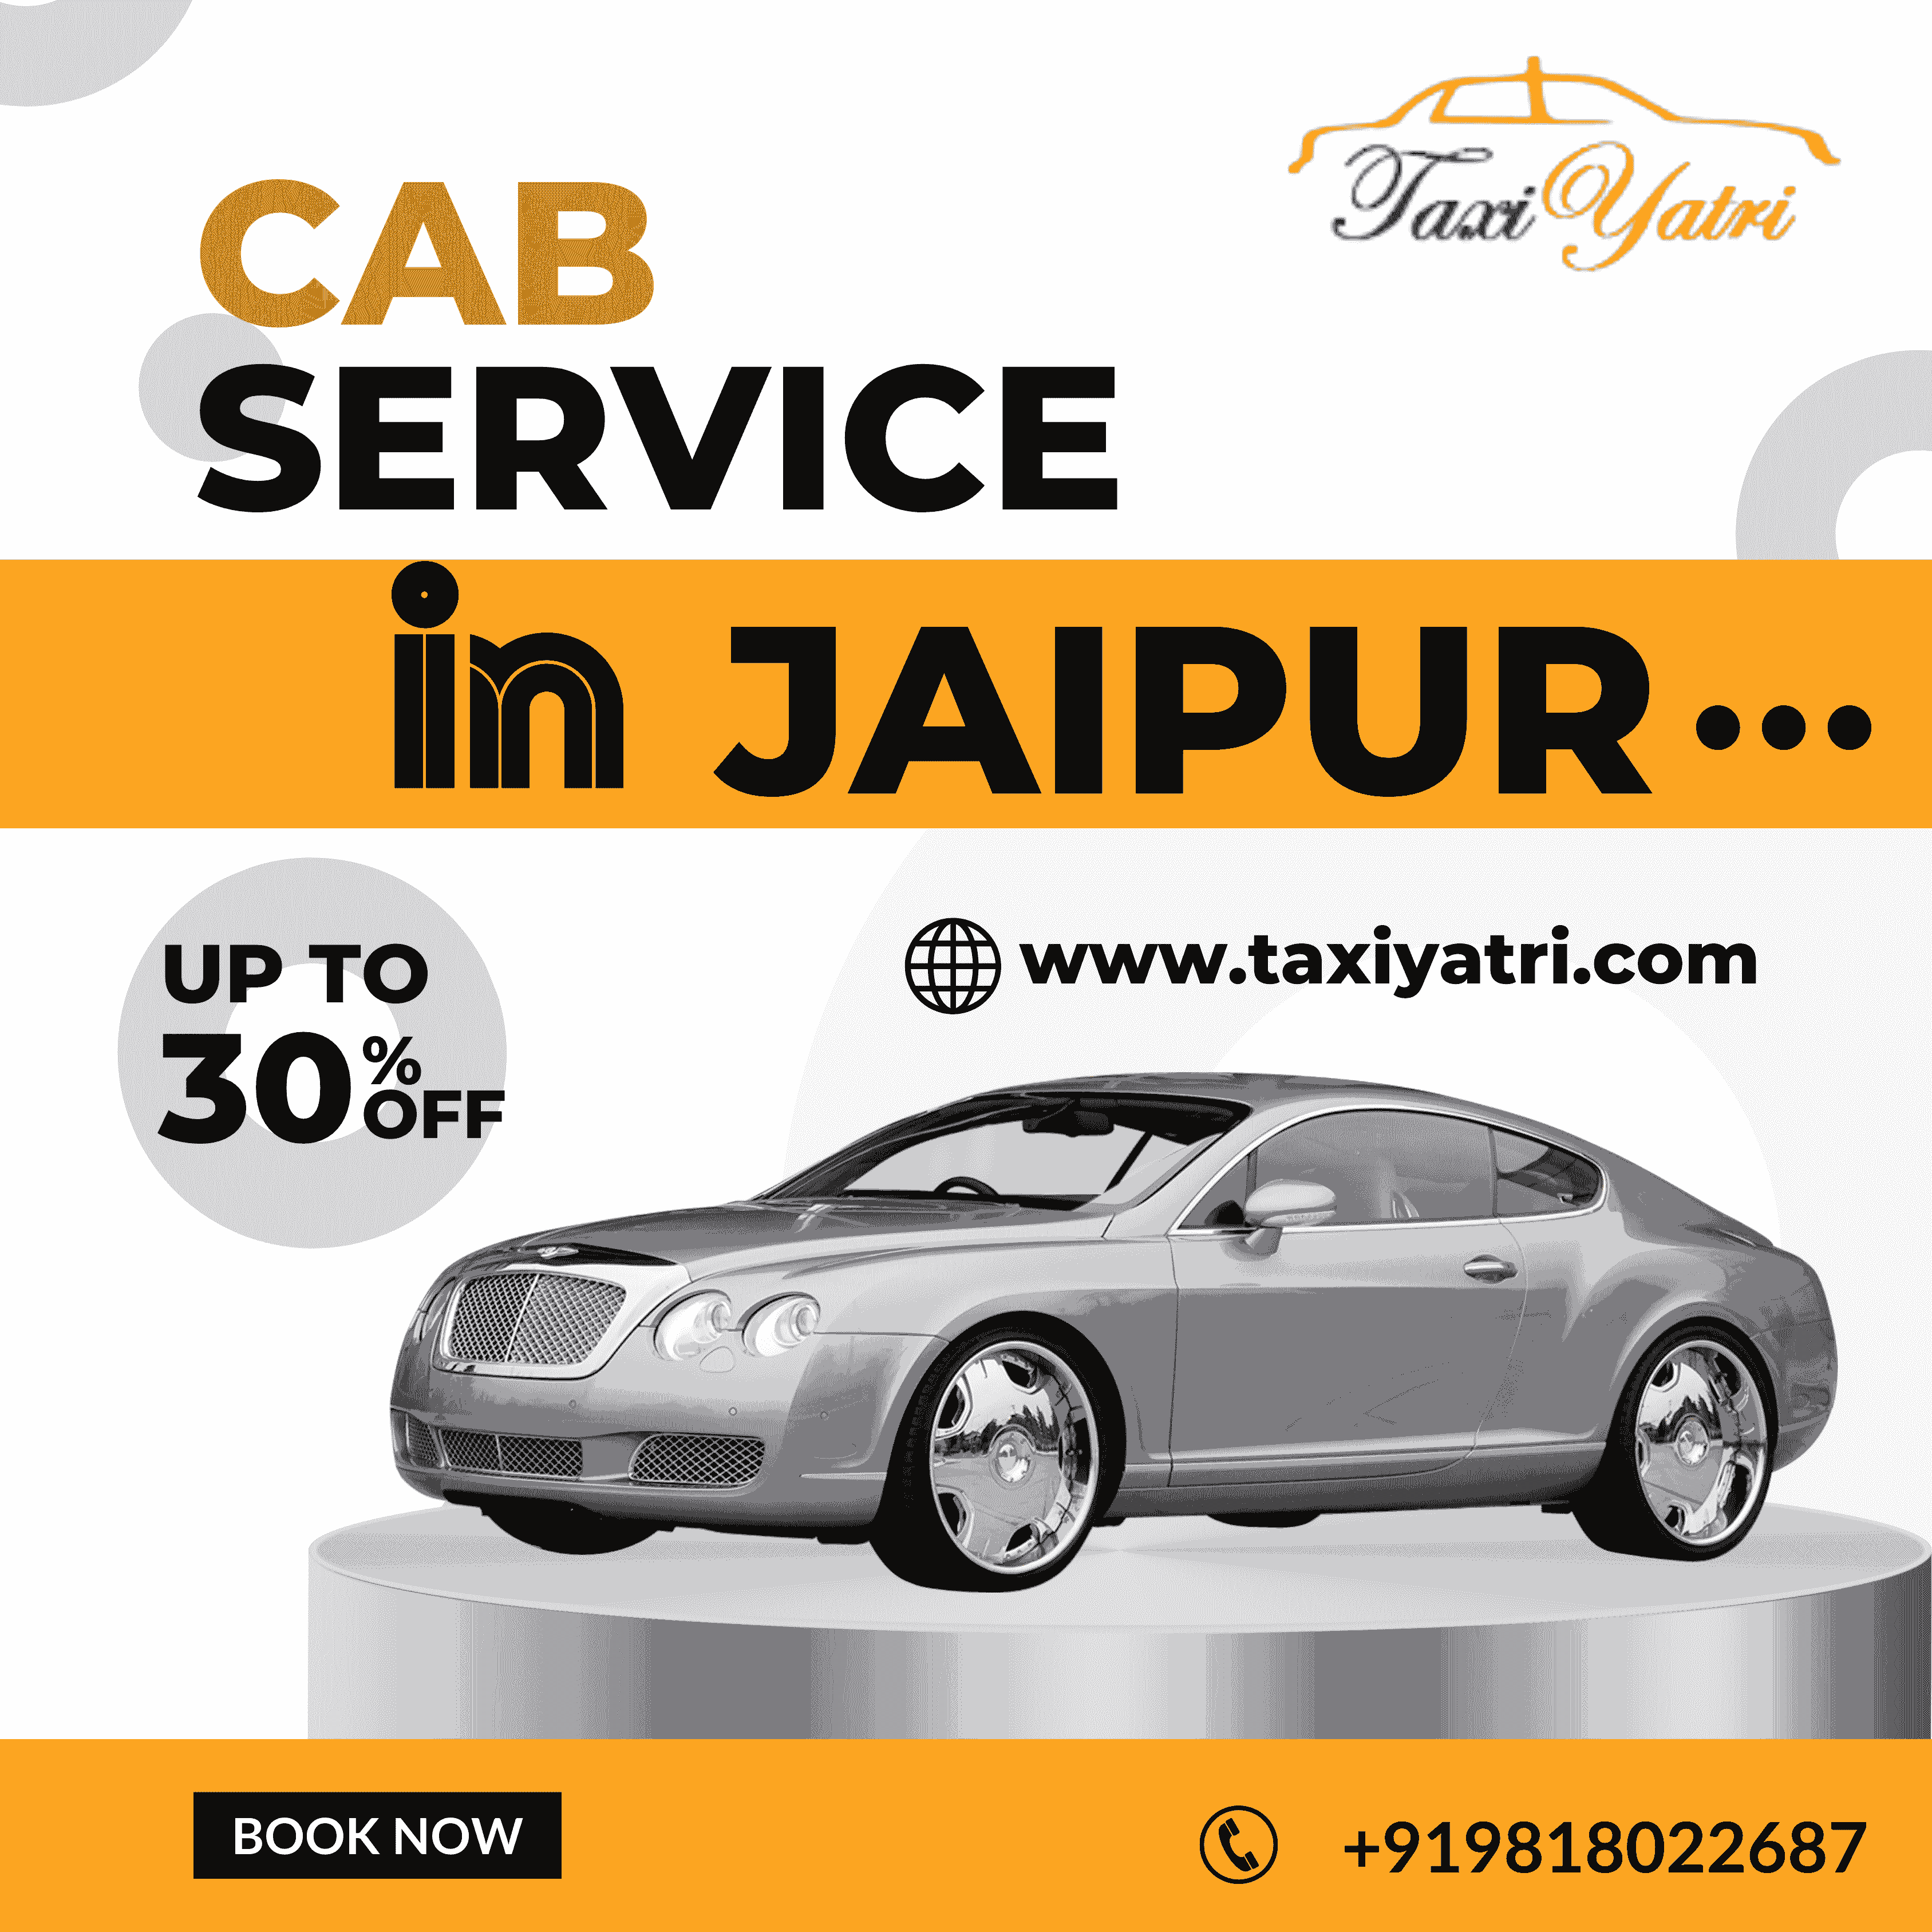 Cab Service in Jaipur